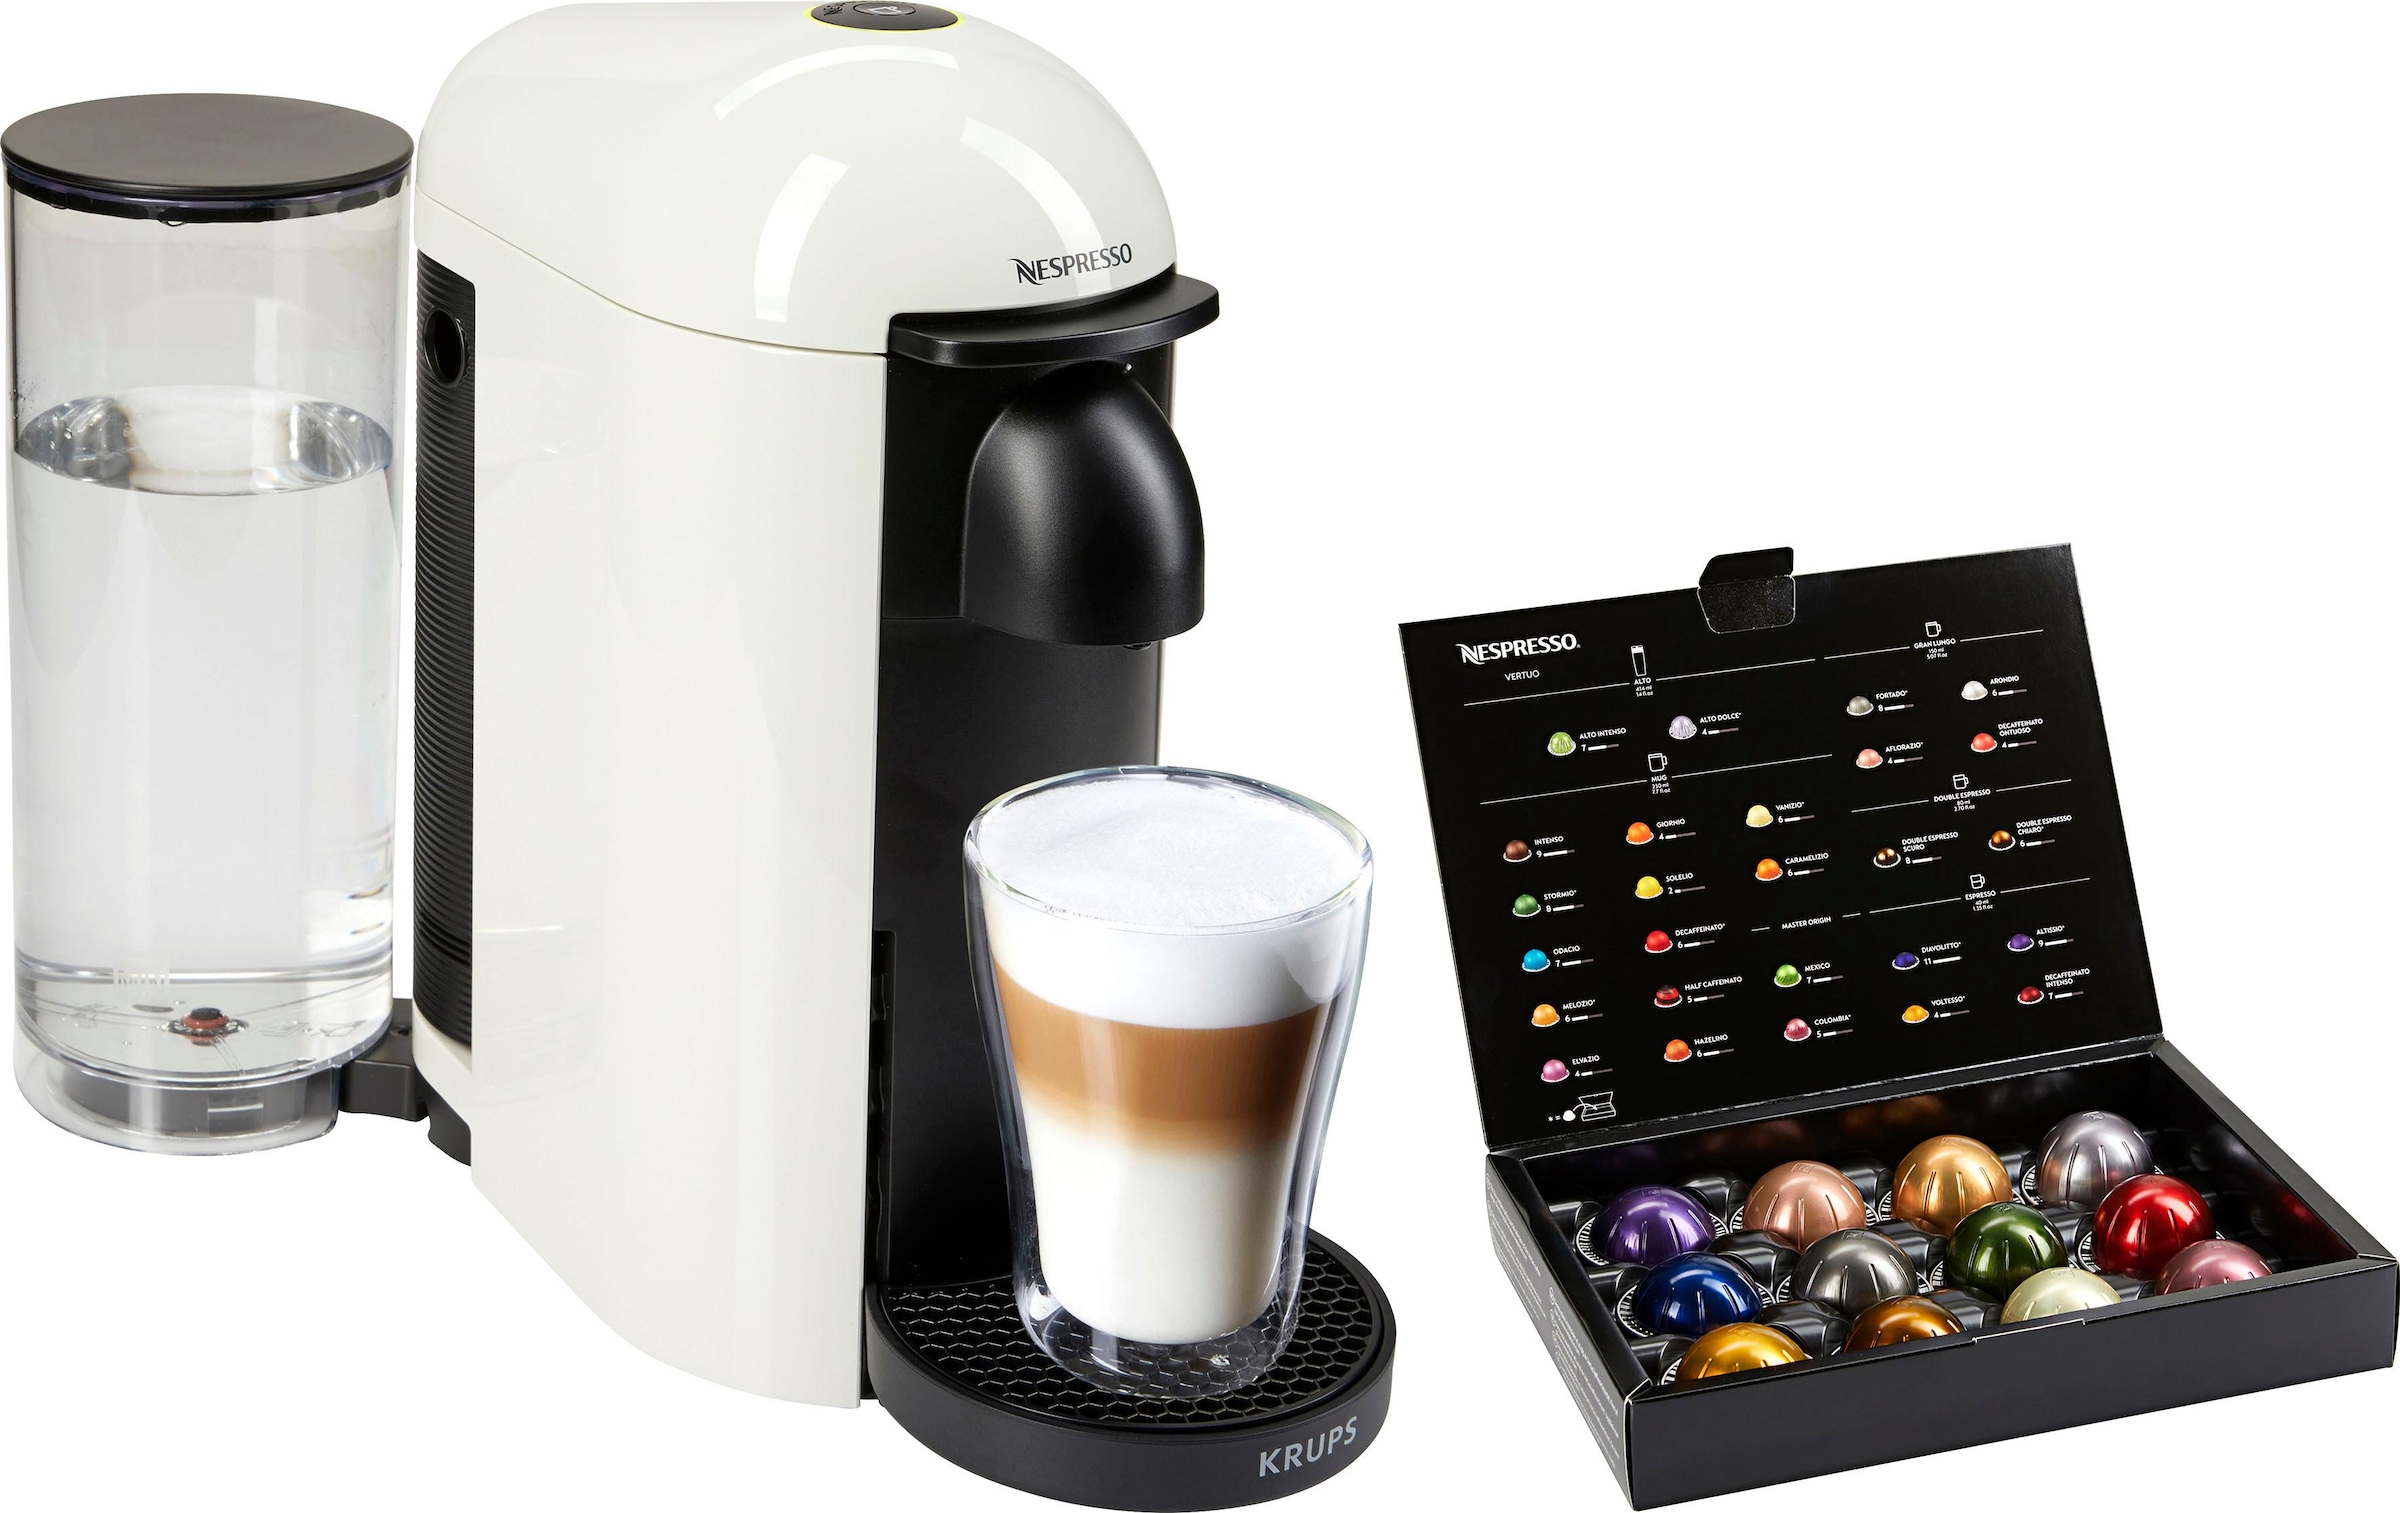 Nespresso Kapselmaschine »XN9031 Vertuo Plus von Krups«, Kapselerkennung durch Barcode, inkl. Willkommenspaket mit 12 Kapseln